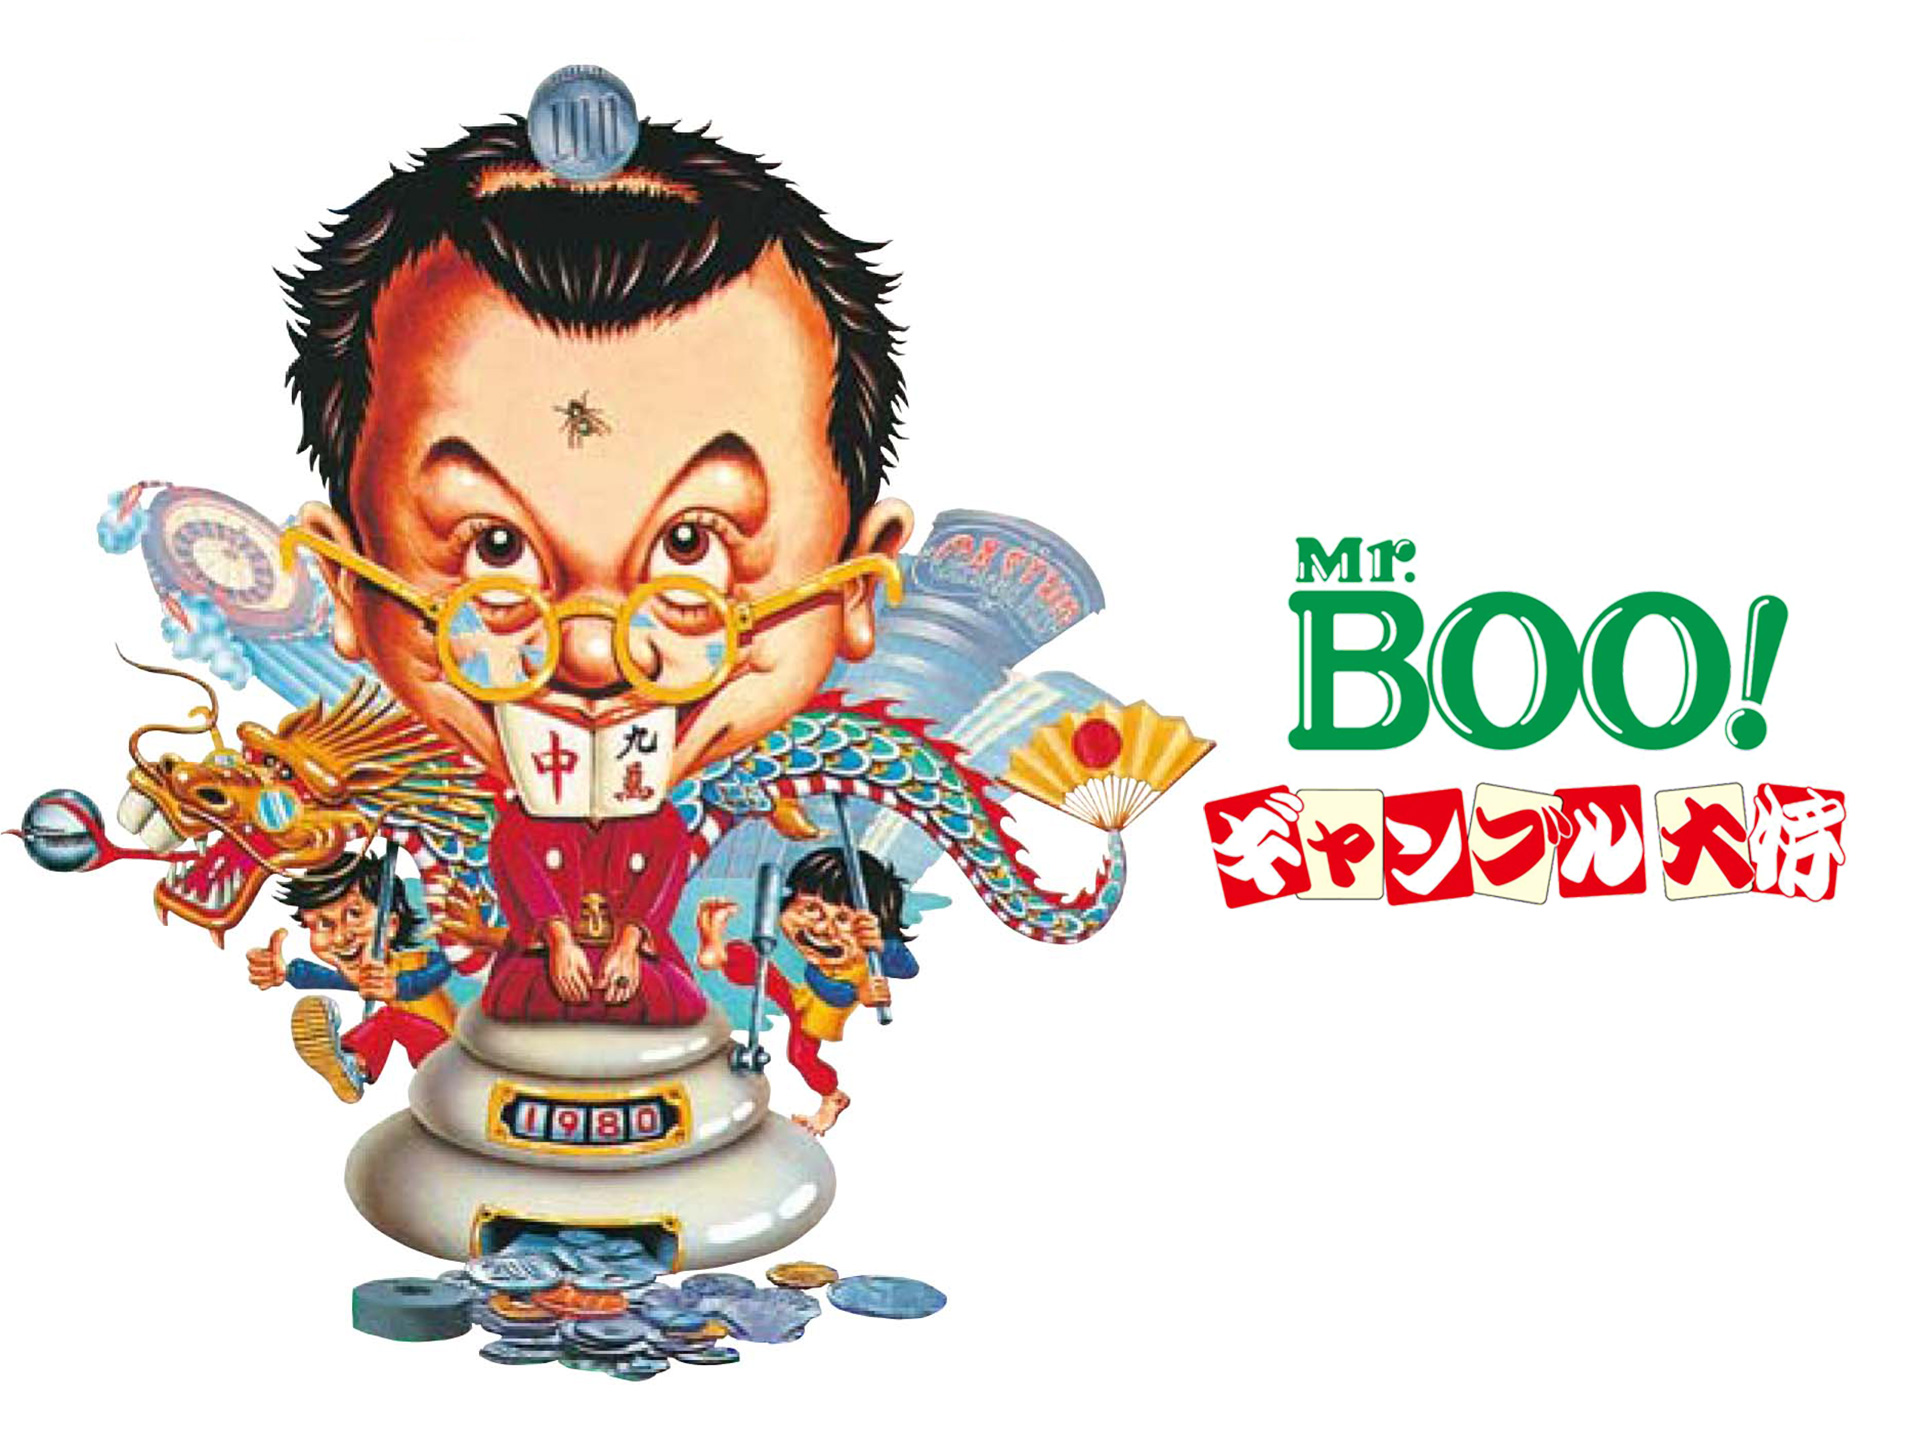 無料視聴あり 韓流 Mr Boo ギャンブル大将 の動画 初月無料 動画配信サービスのビデオマーケット